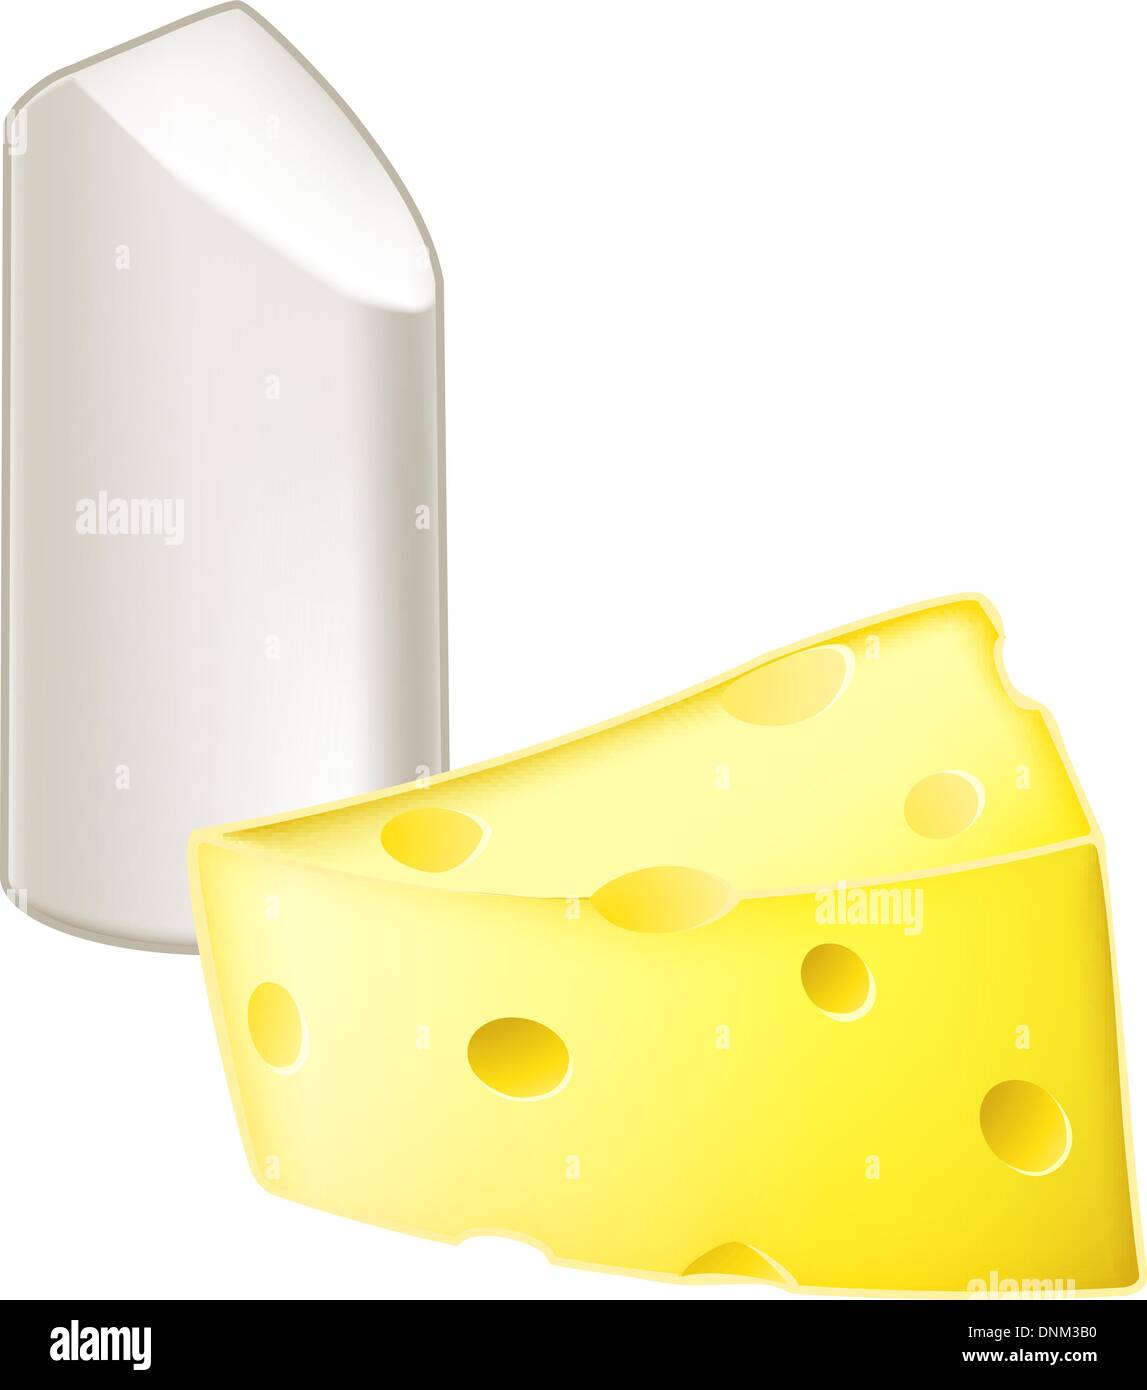 Illustrazione di stick di gesso e pezzo di formaggio, la metafora di gesso e formaggio, significato molto diverso, dissimile o op Illustrazione Vettoriale